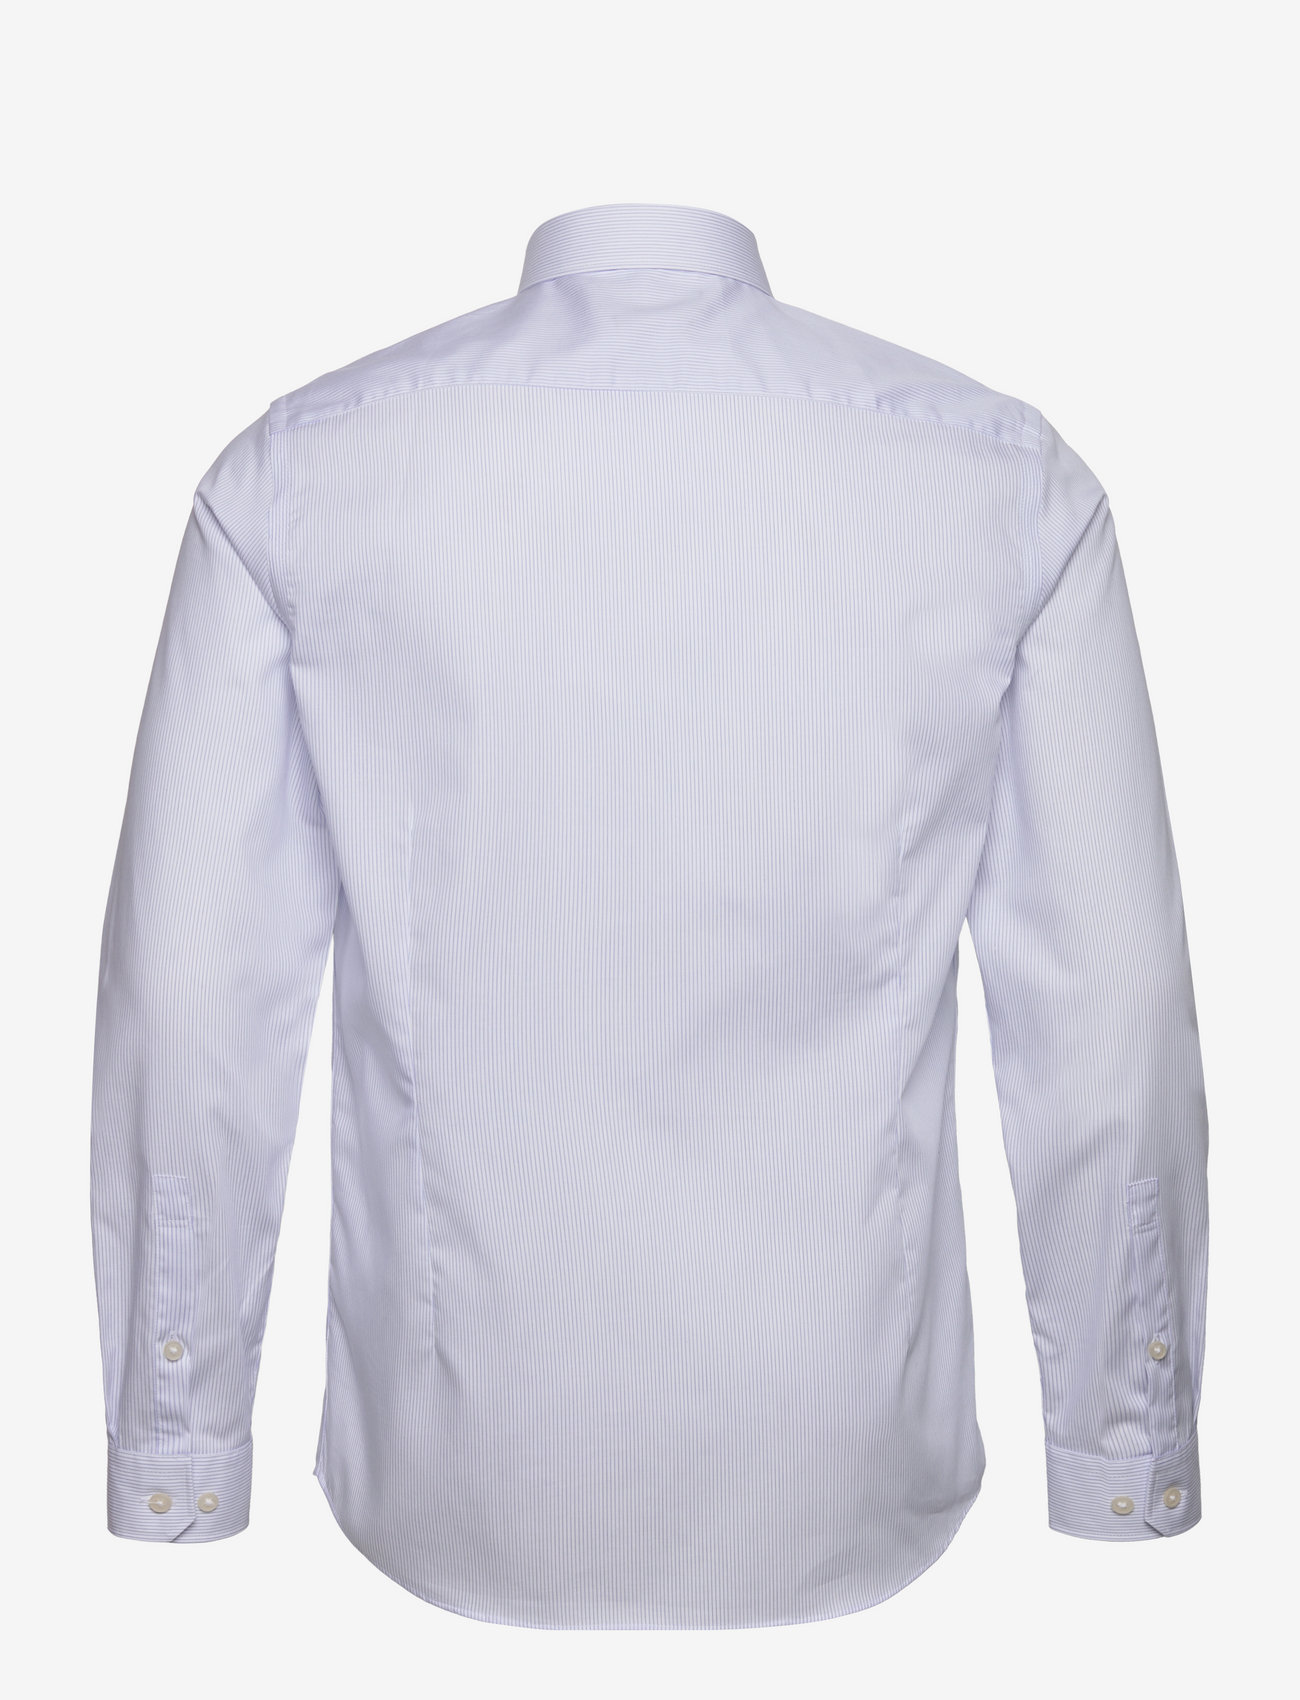 Lindbergh Black - Technical striped shirt L/S - penskjorter - white - 1